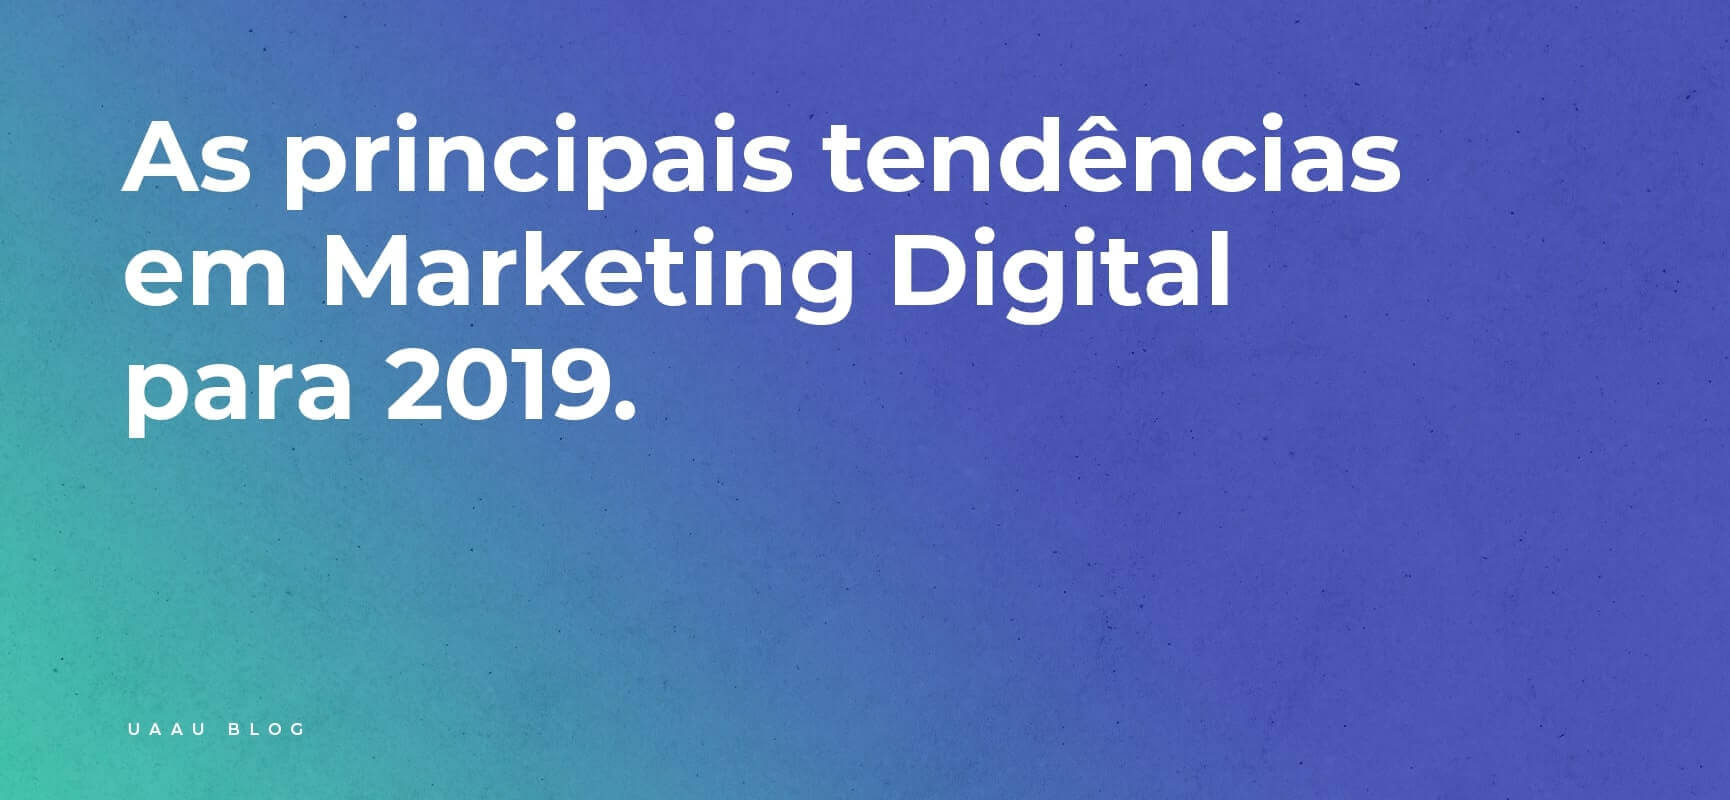 As principais tendências em Marketing Digital para 2019